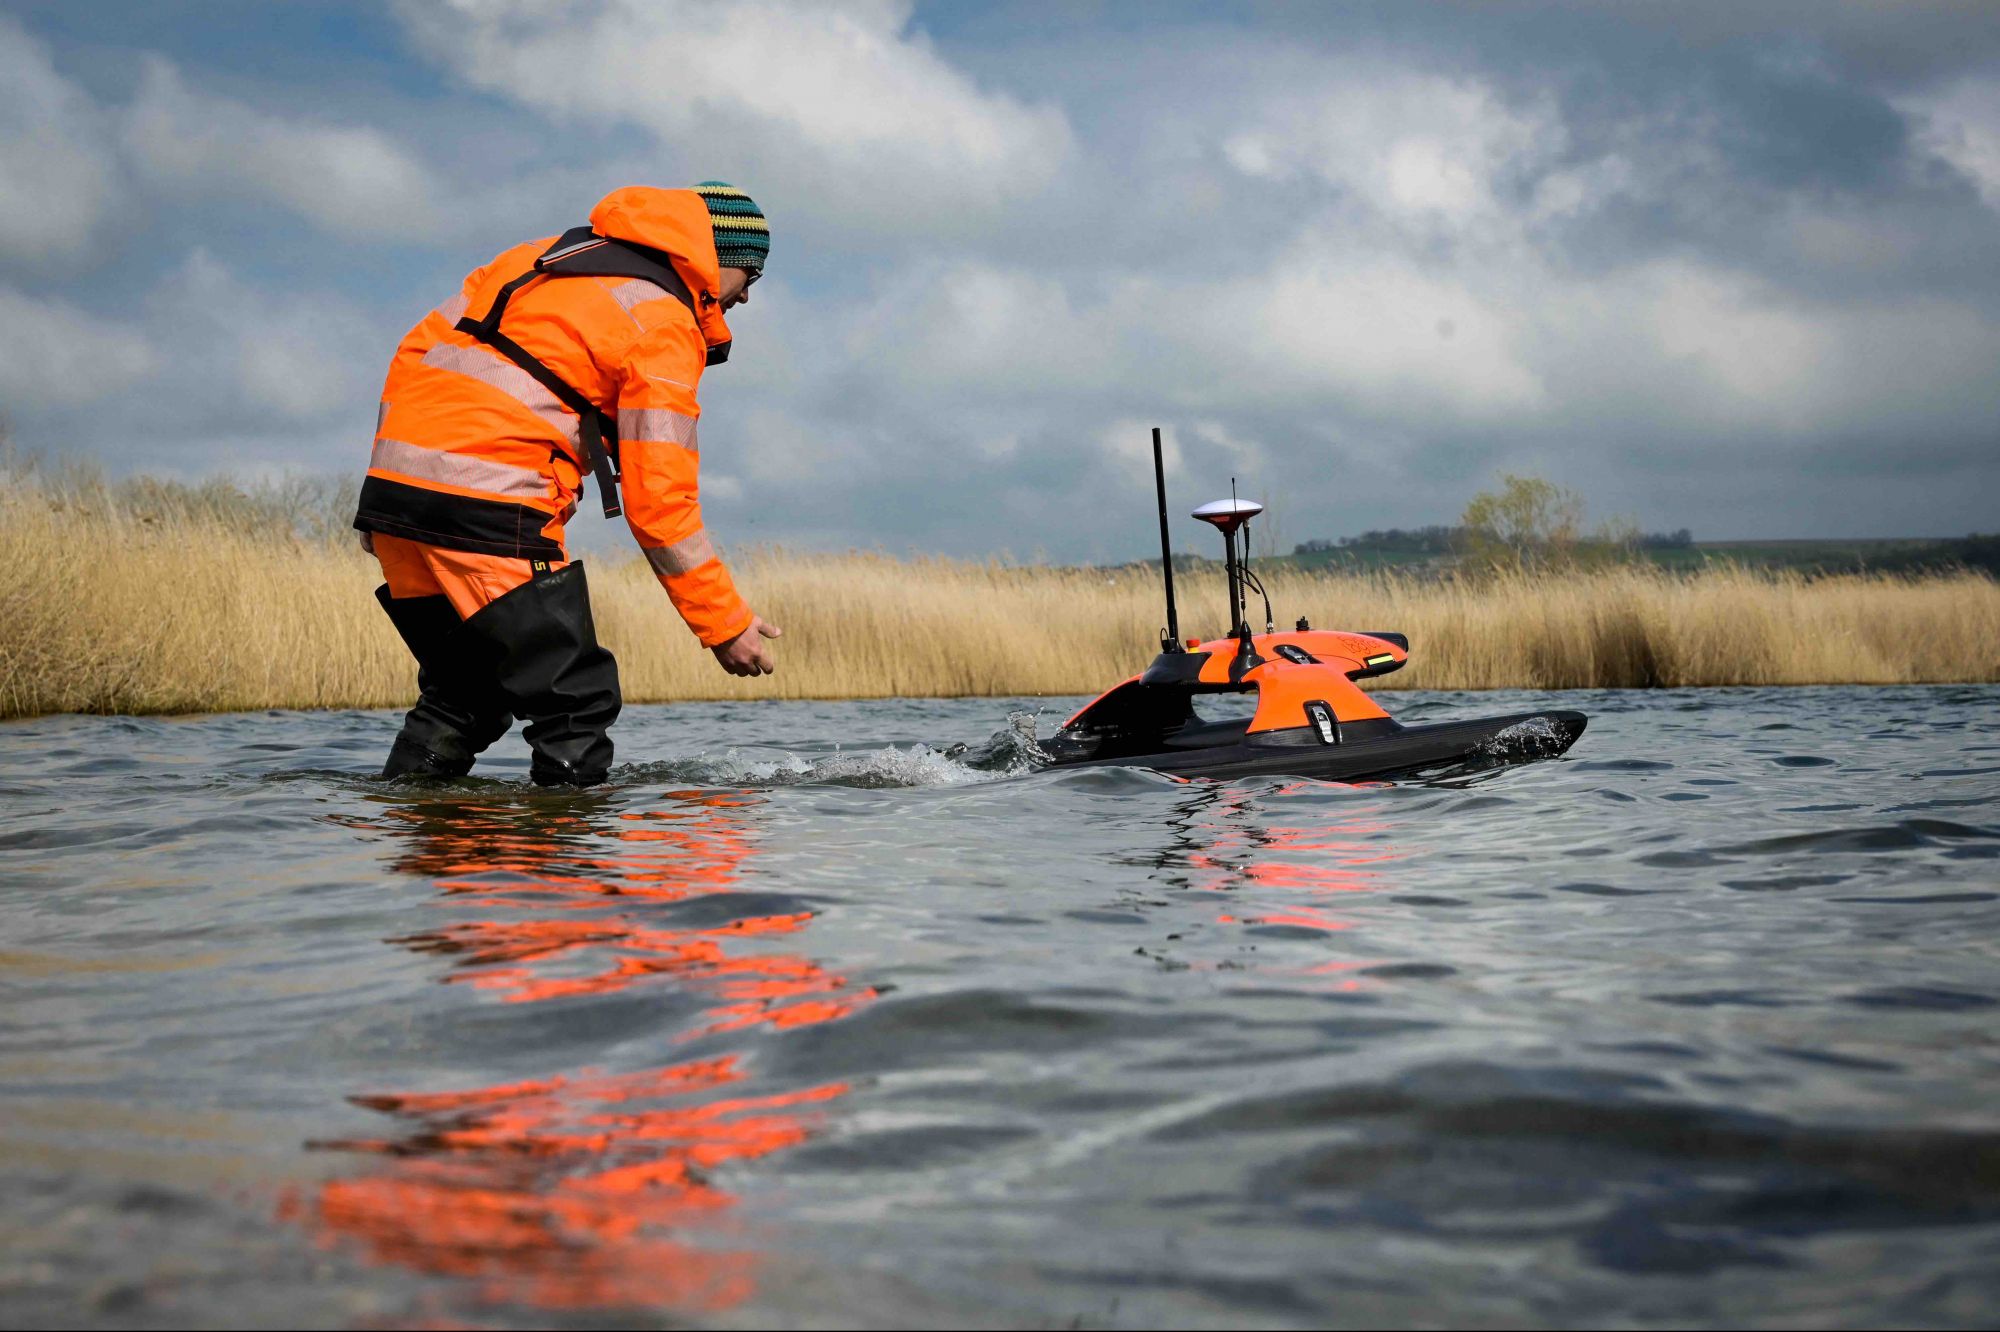 «Плавучий дрон» Sonobot с закрепленным под днищем сонаром сканирует дно озера в поисках археологических находок